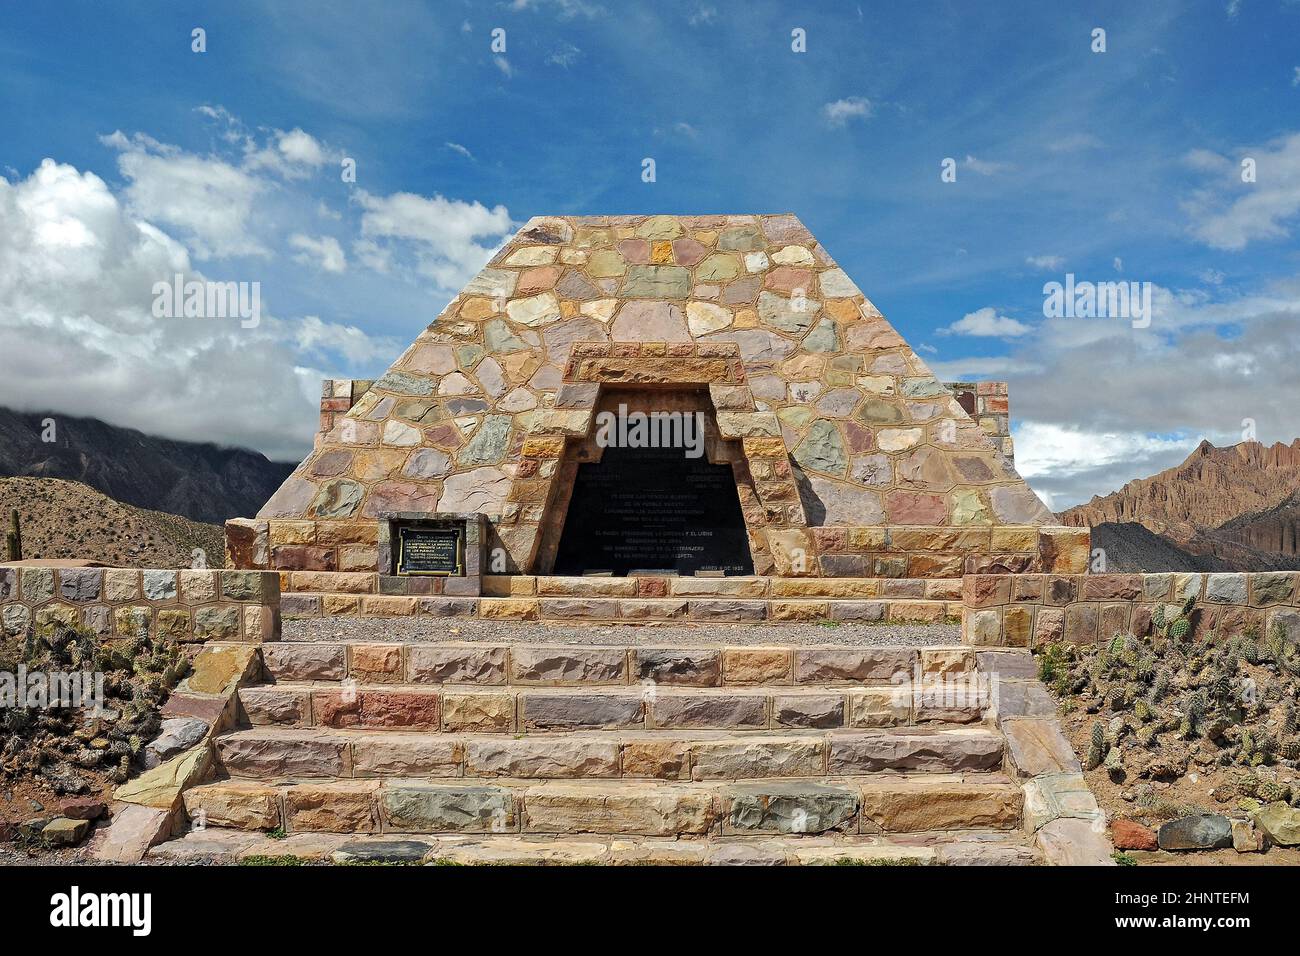 Pucara De Tilcara, pyramids monument, Argentina Stock Photo